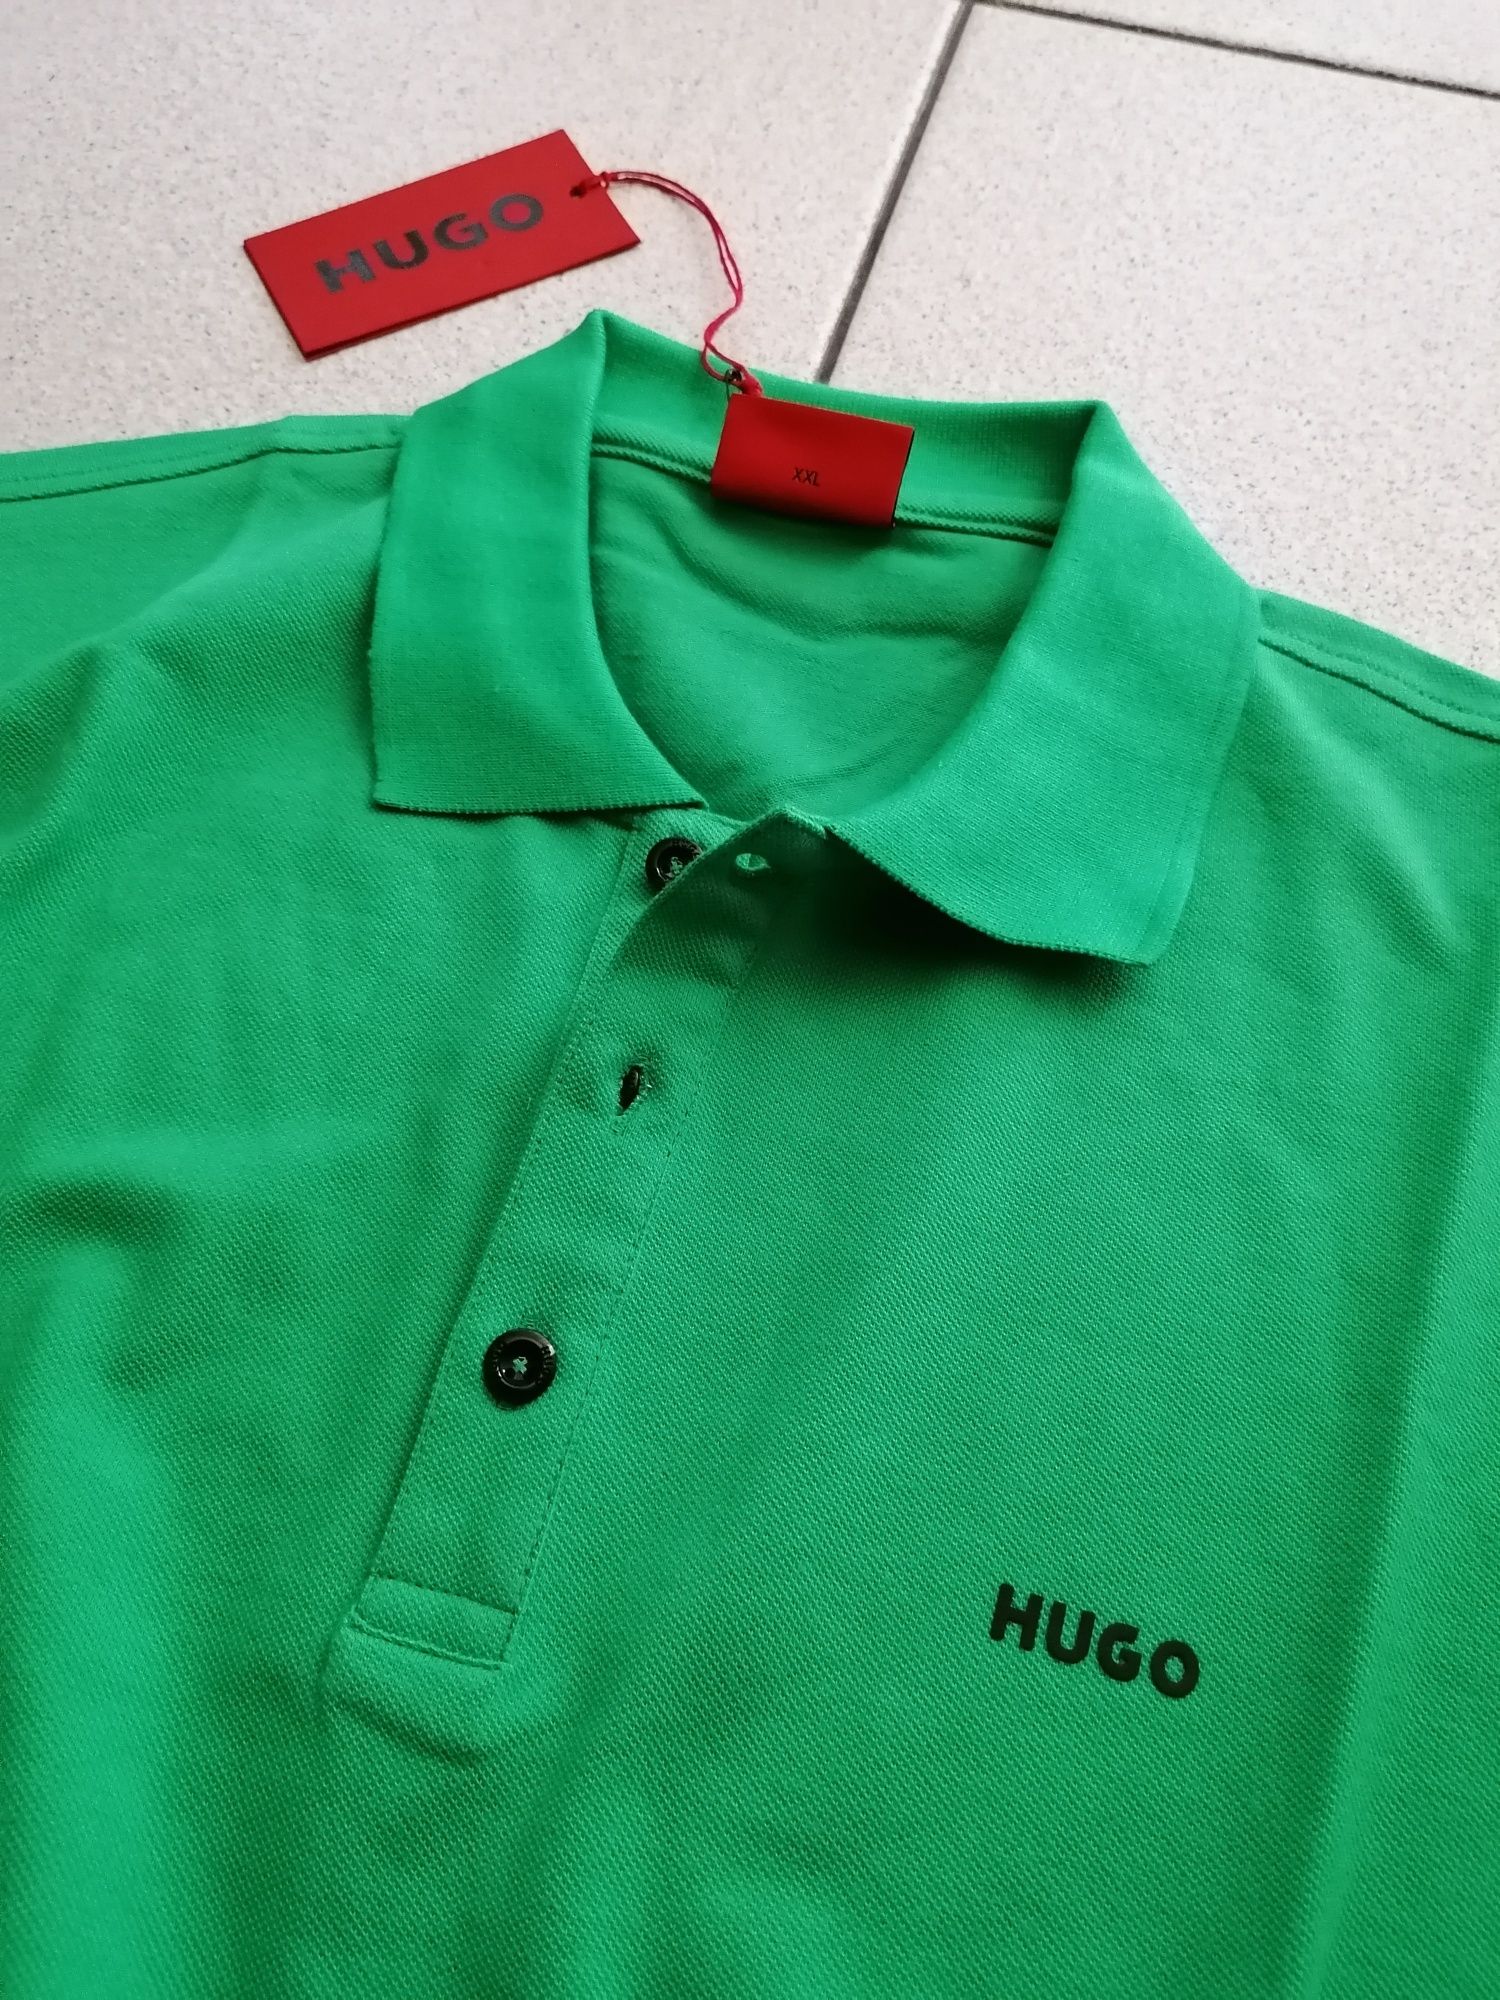 HUGO BOSS® - 30% - НОВА - мъжка поло тениска - 56(2XL)